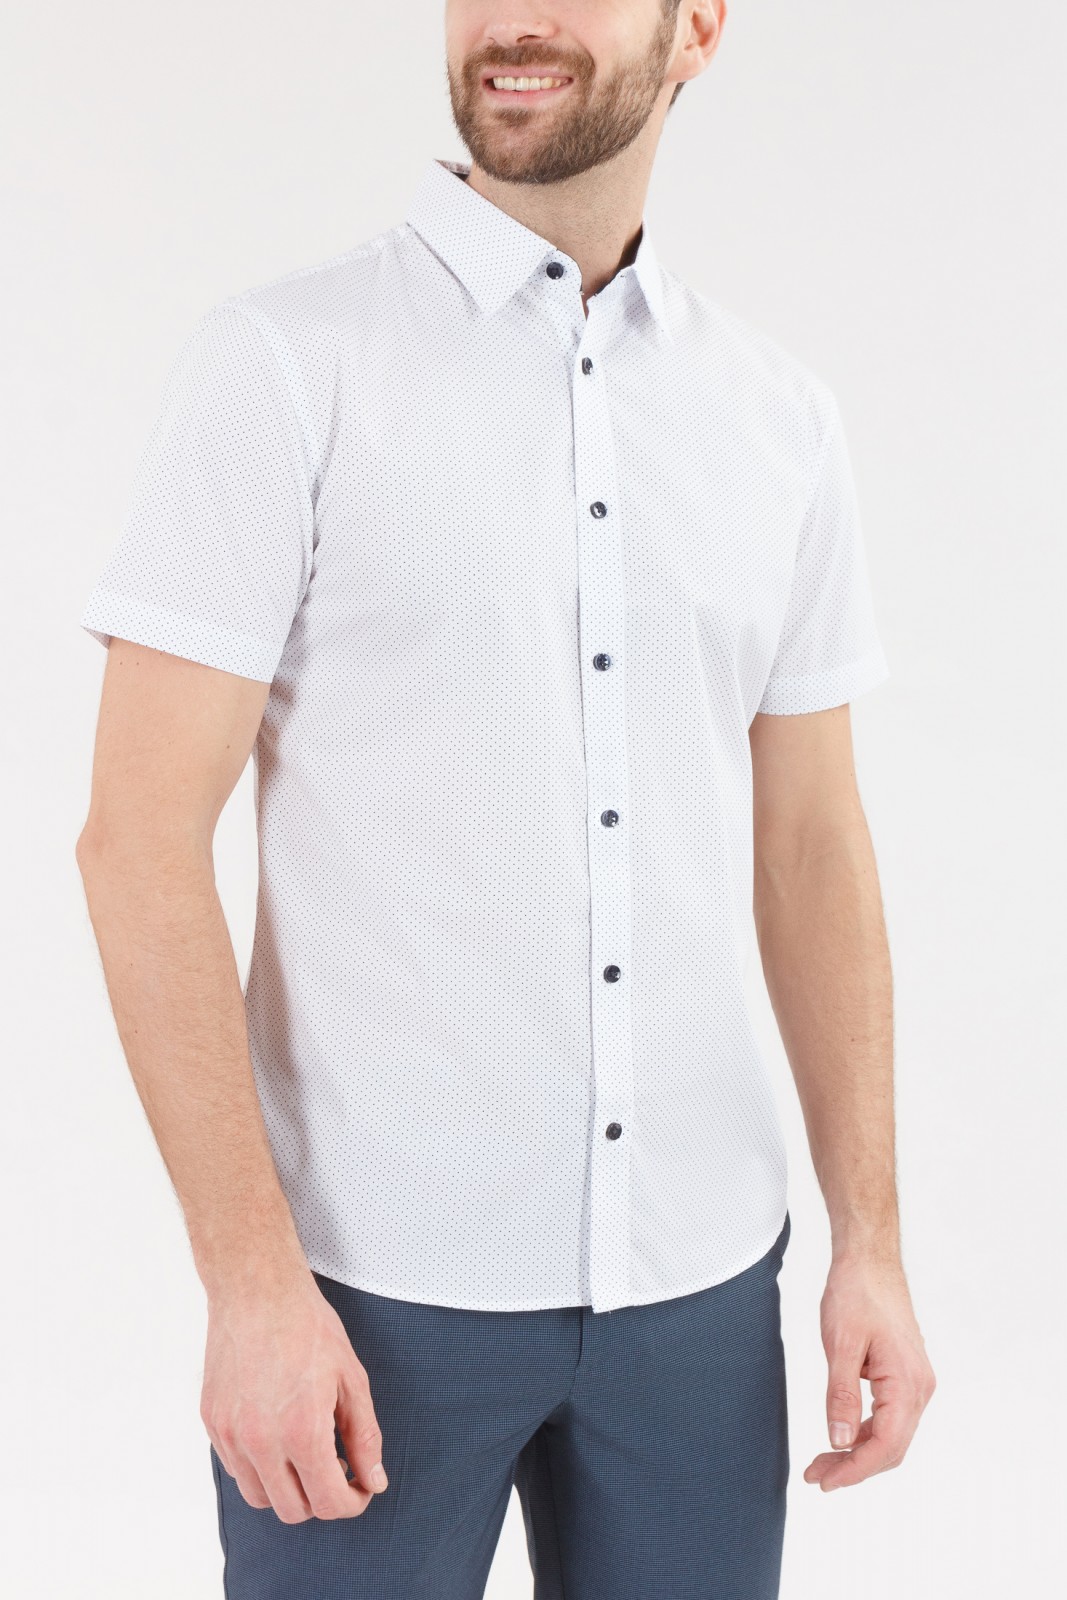 Рубашка с  короткими рукавами zolla 010222259052, цвет белый, размер S